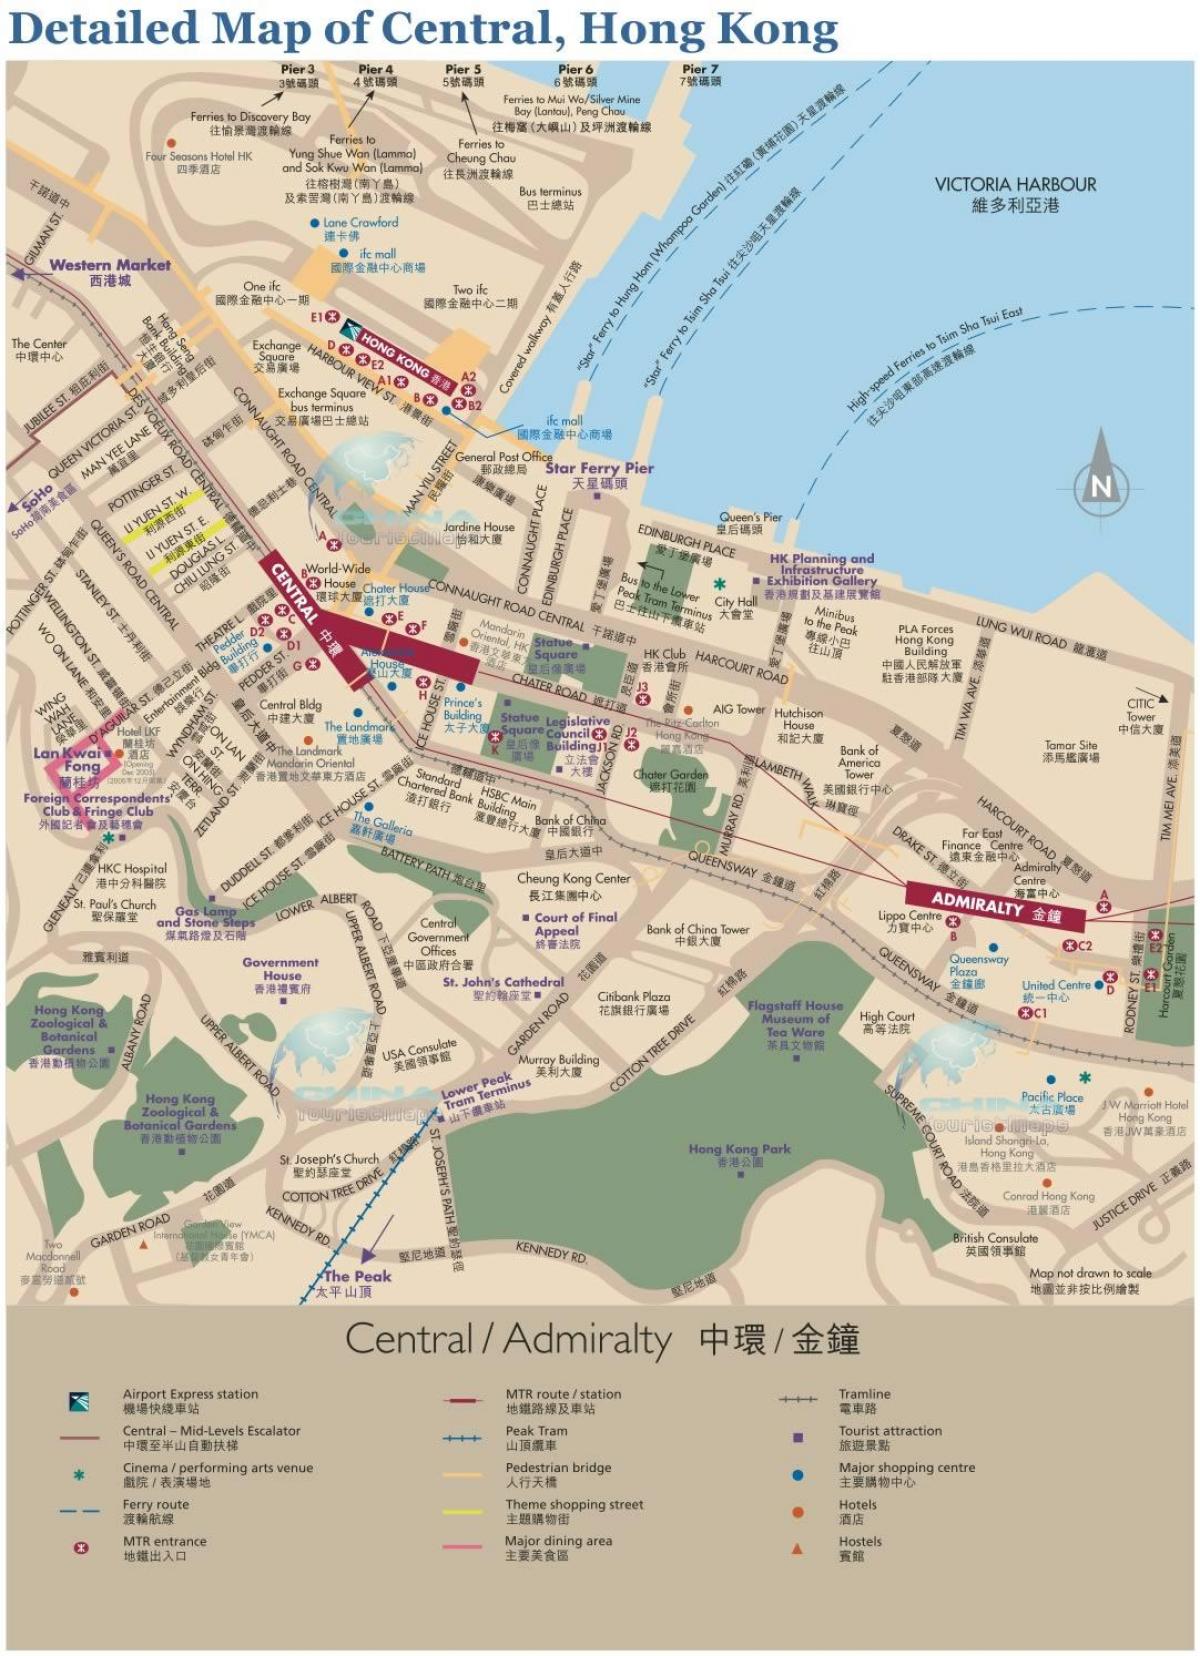 ہانگ کانگ کے مرکزی نقشہ